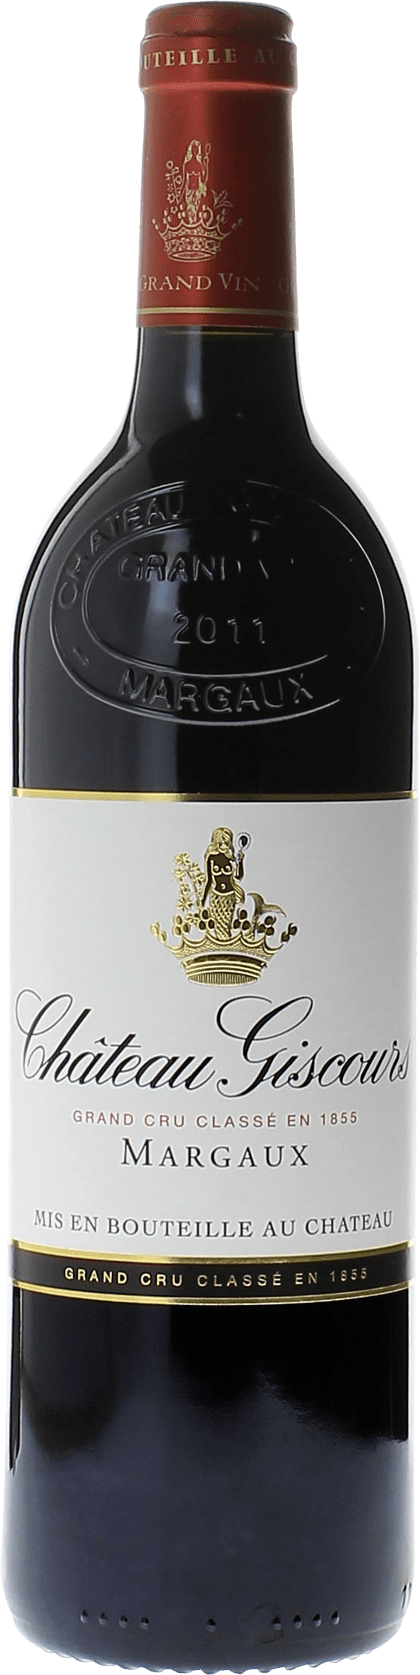 Giscours 1993 3me Grand cru class Margaux, Bordeaux rouge